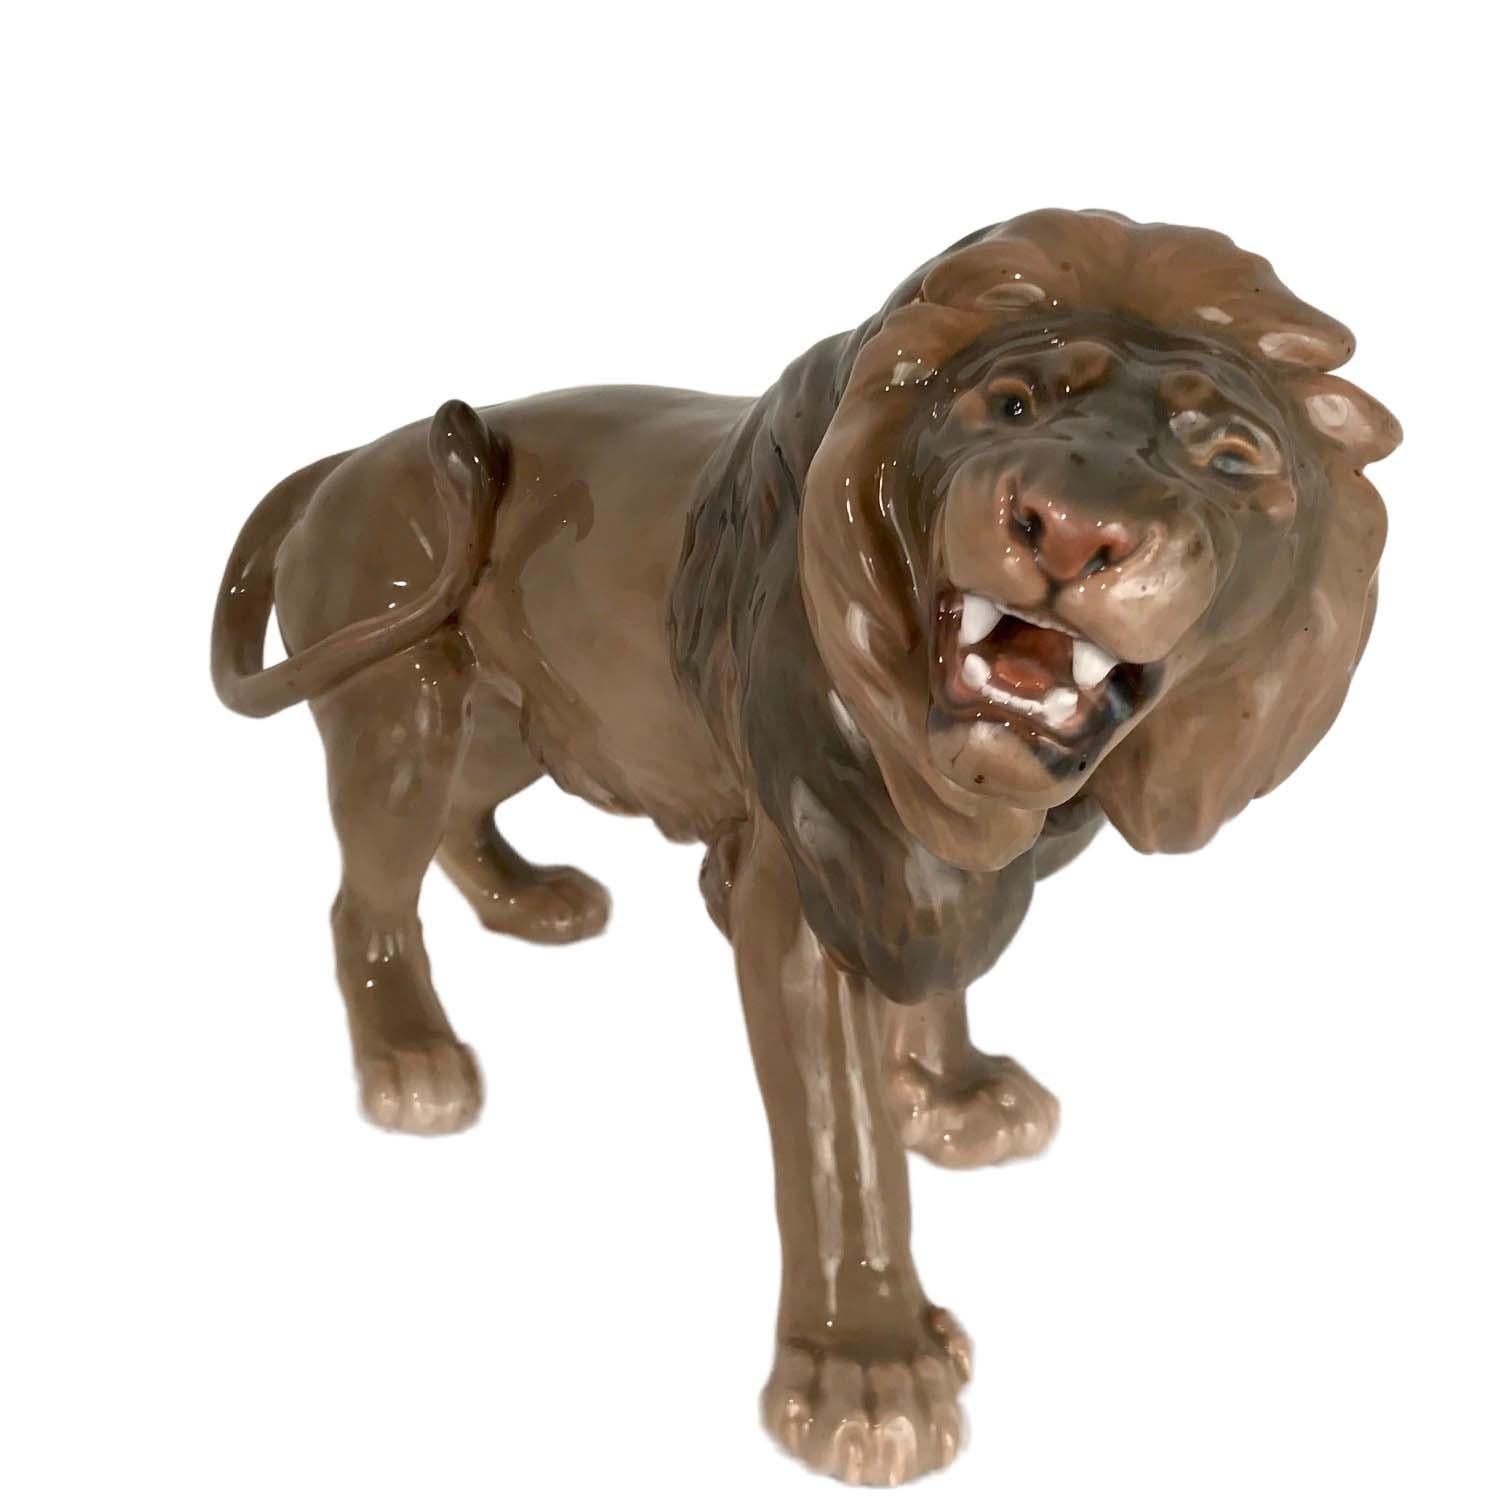 Ce lion rugissant en porcelaine de très grande taille est bien moulé et peint à la main avec le souci du détail. Il est entièrement marqué des trois tours de Copenhague sur le bas d'une patte avant et du numéro de produit 2052 sur l'autre.
En